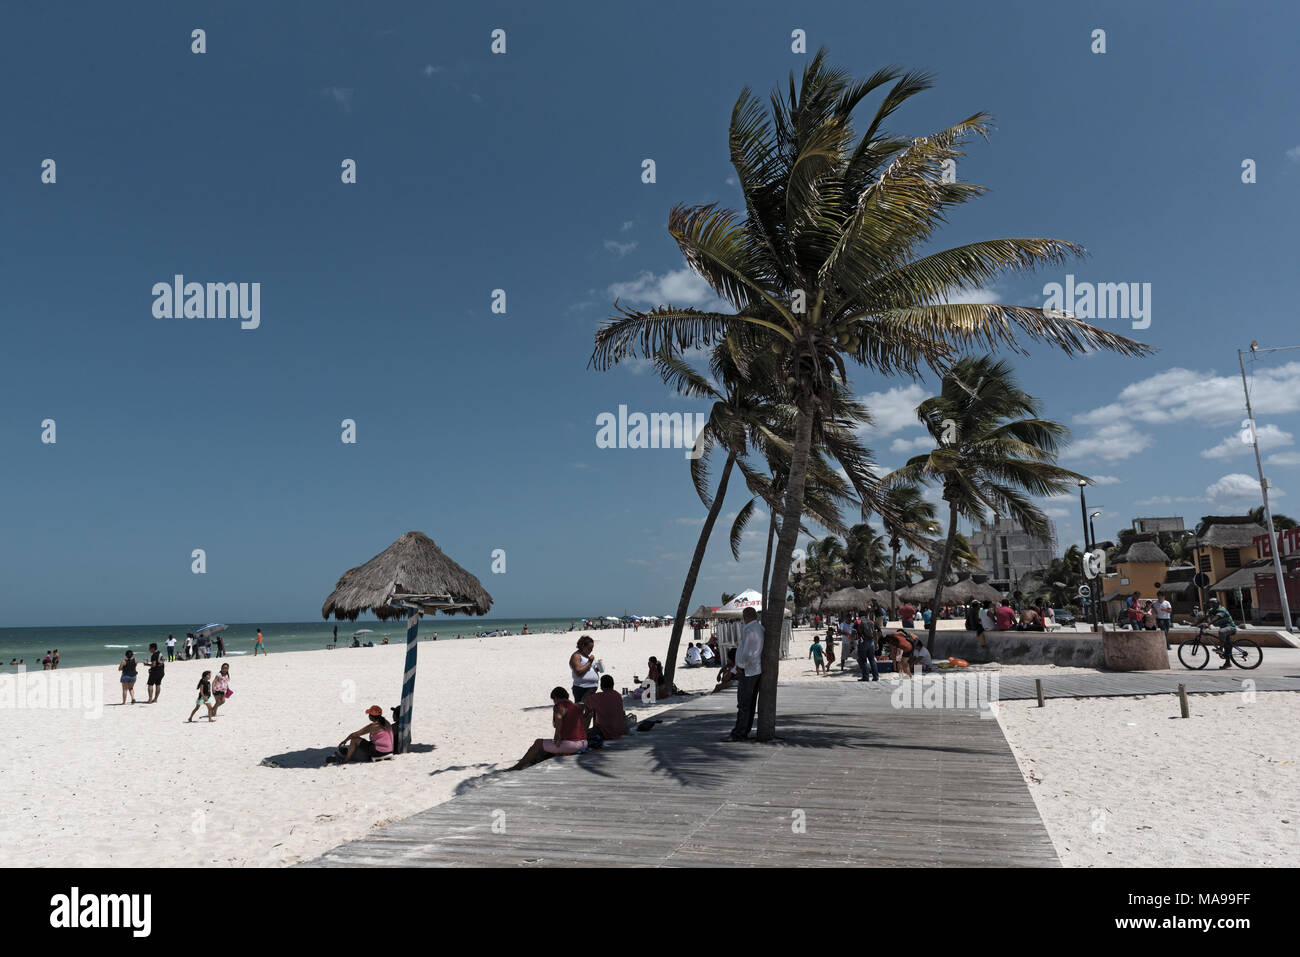 La plage de Progreso dans le nord de Merida, Yucatan, Mexique Banque D'Images